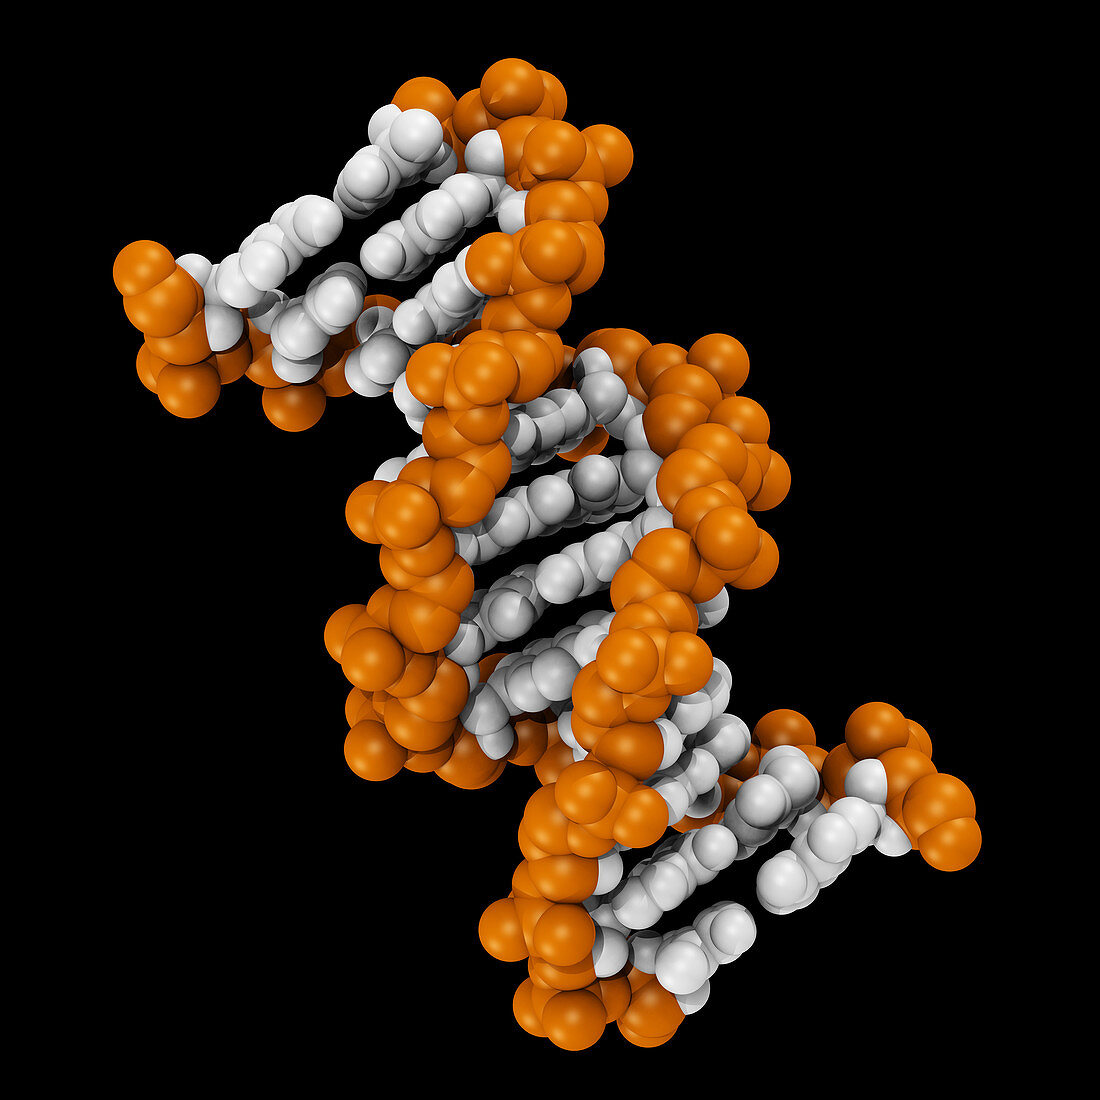 3D DNA Molecule